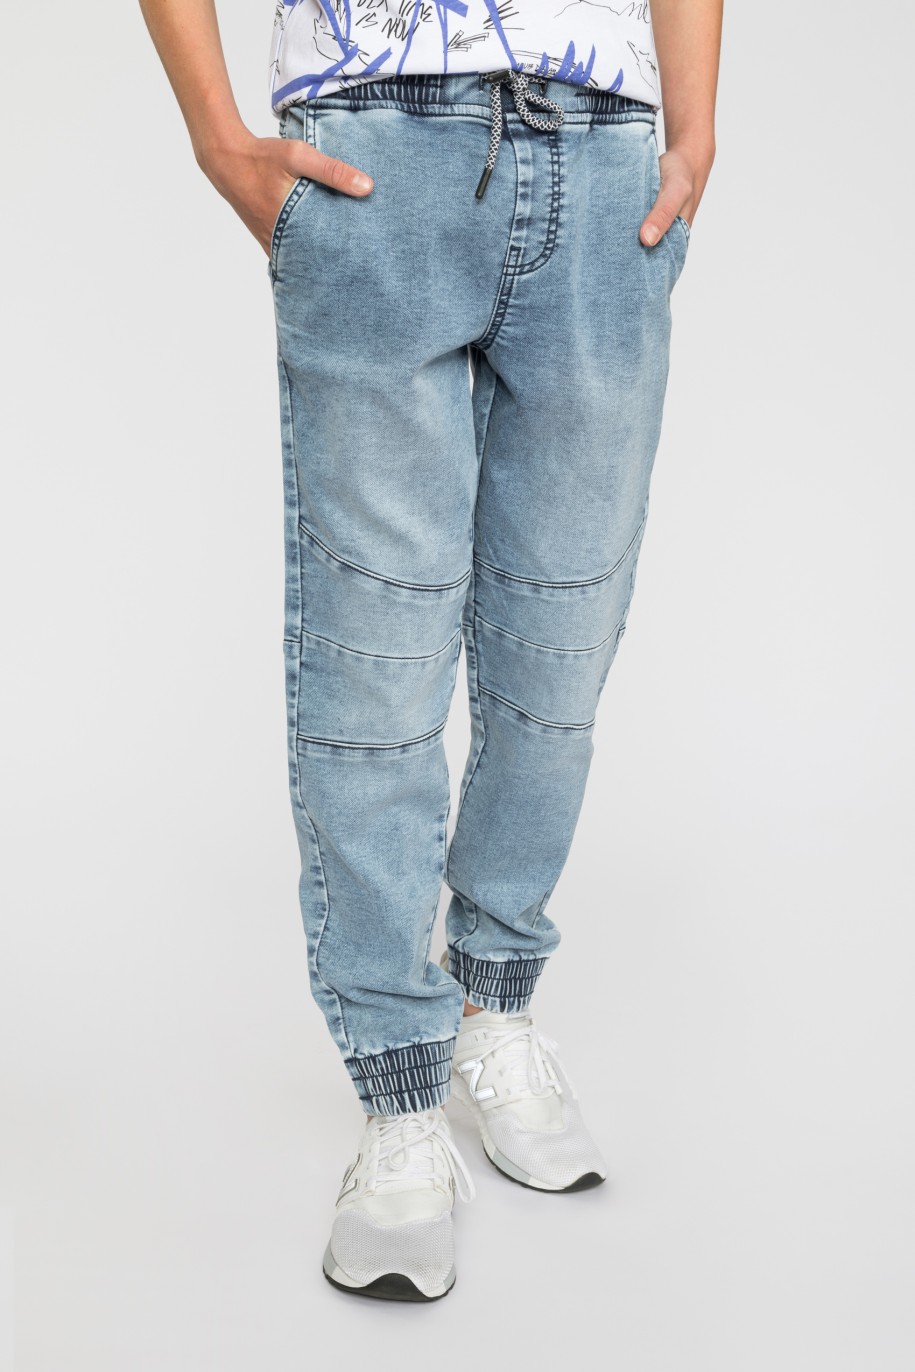 Niebieskie jeansy typu jogger ze ściągaczami dla chłopaka - 33580